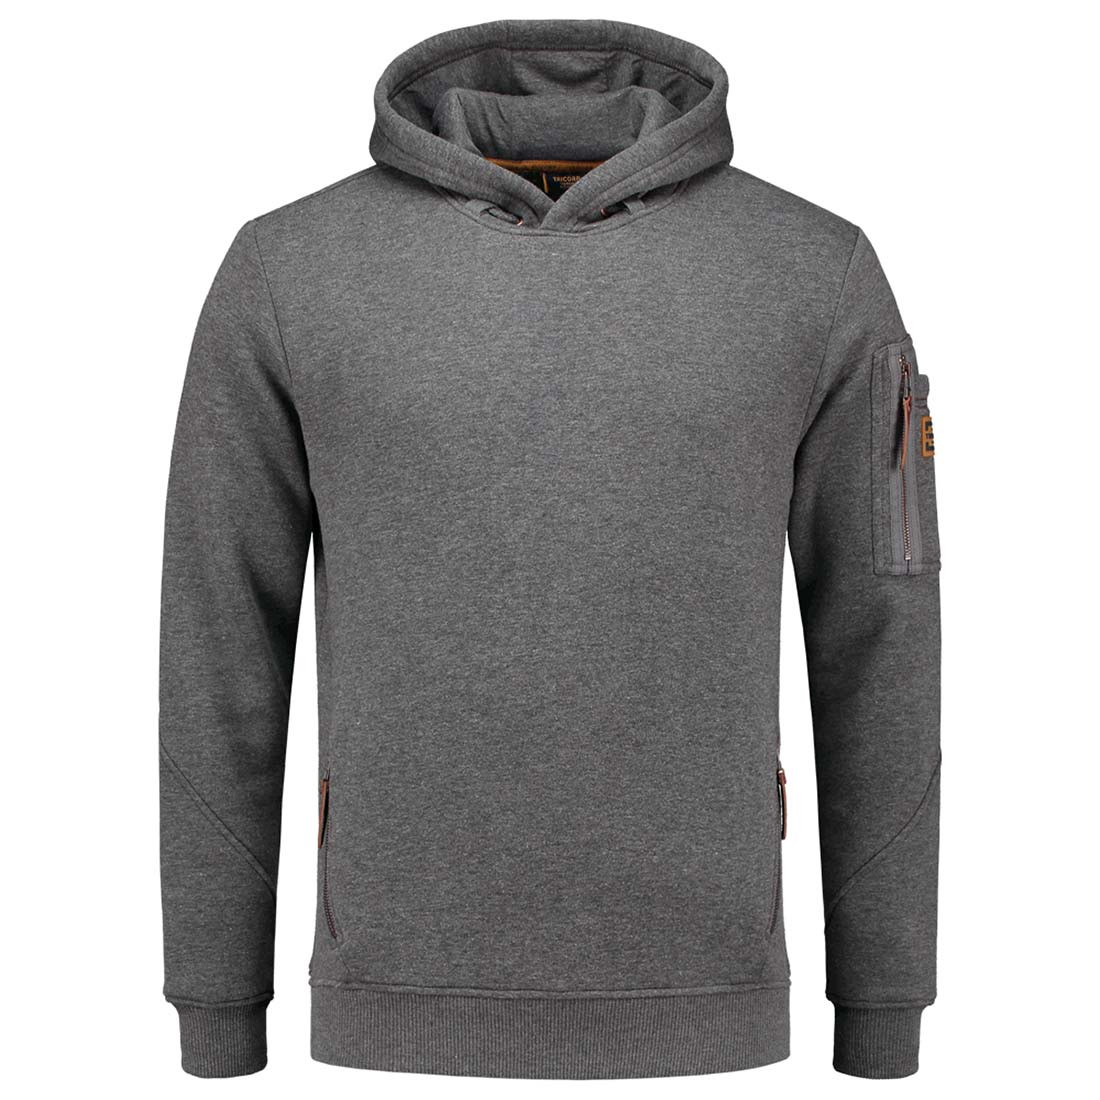 PREMIUM Men's Hooded Sweater - Safetywear